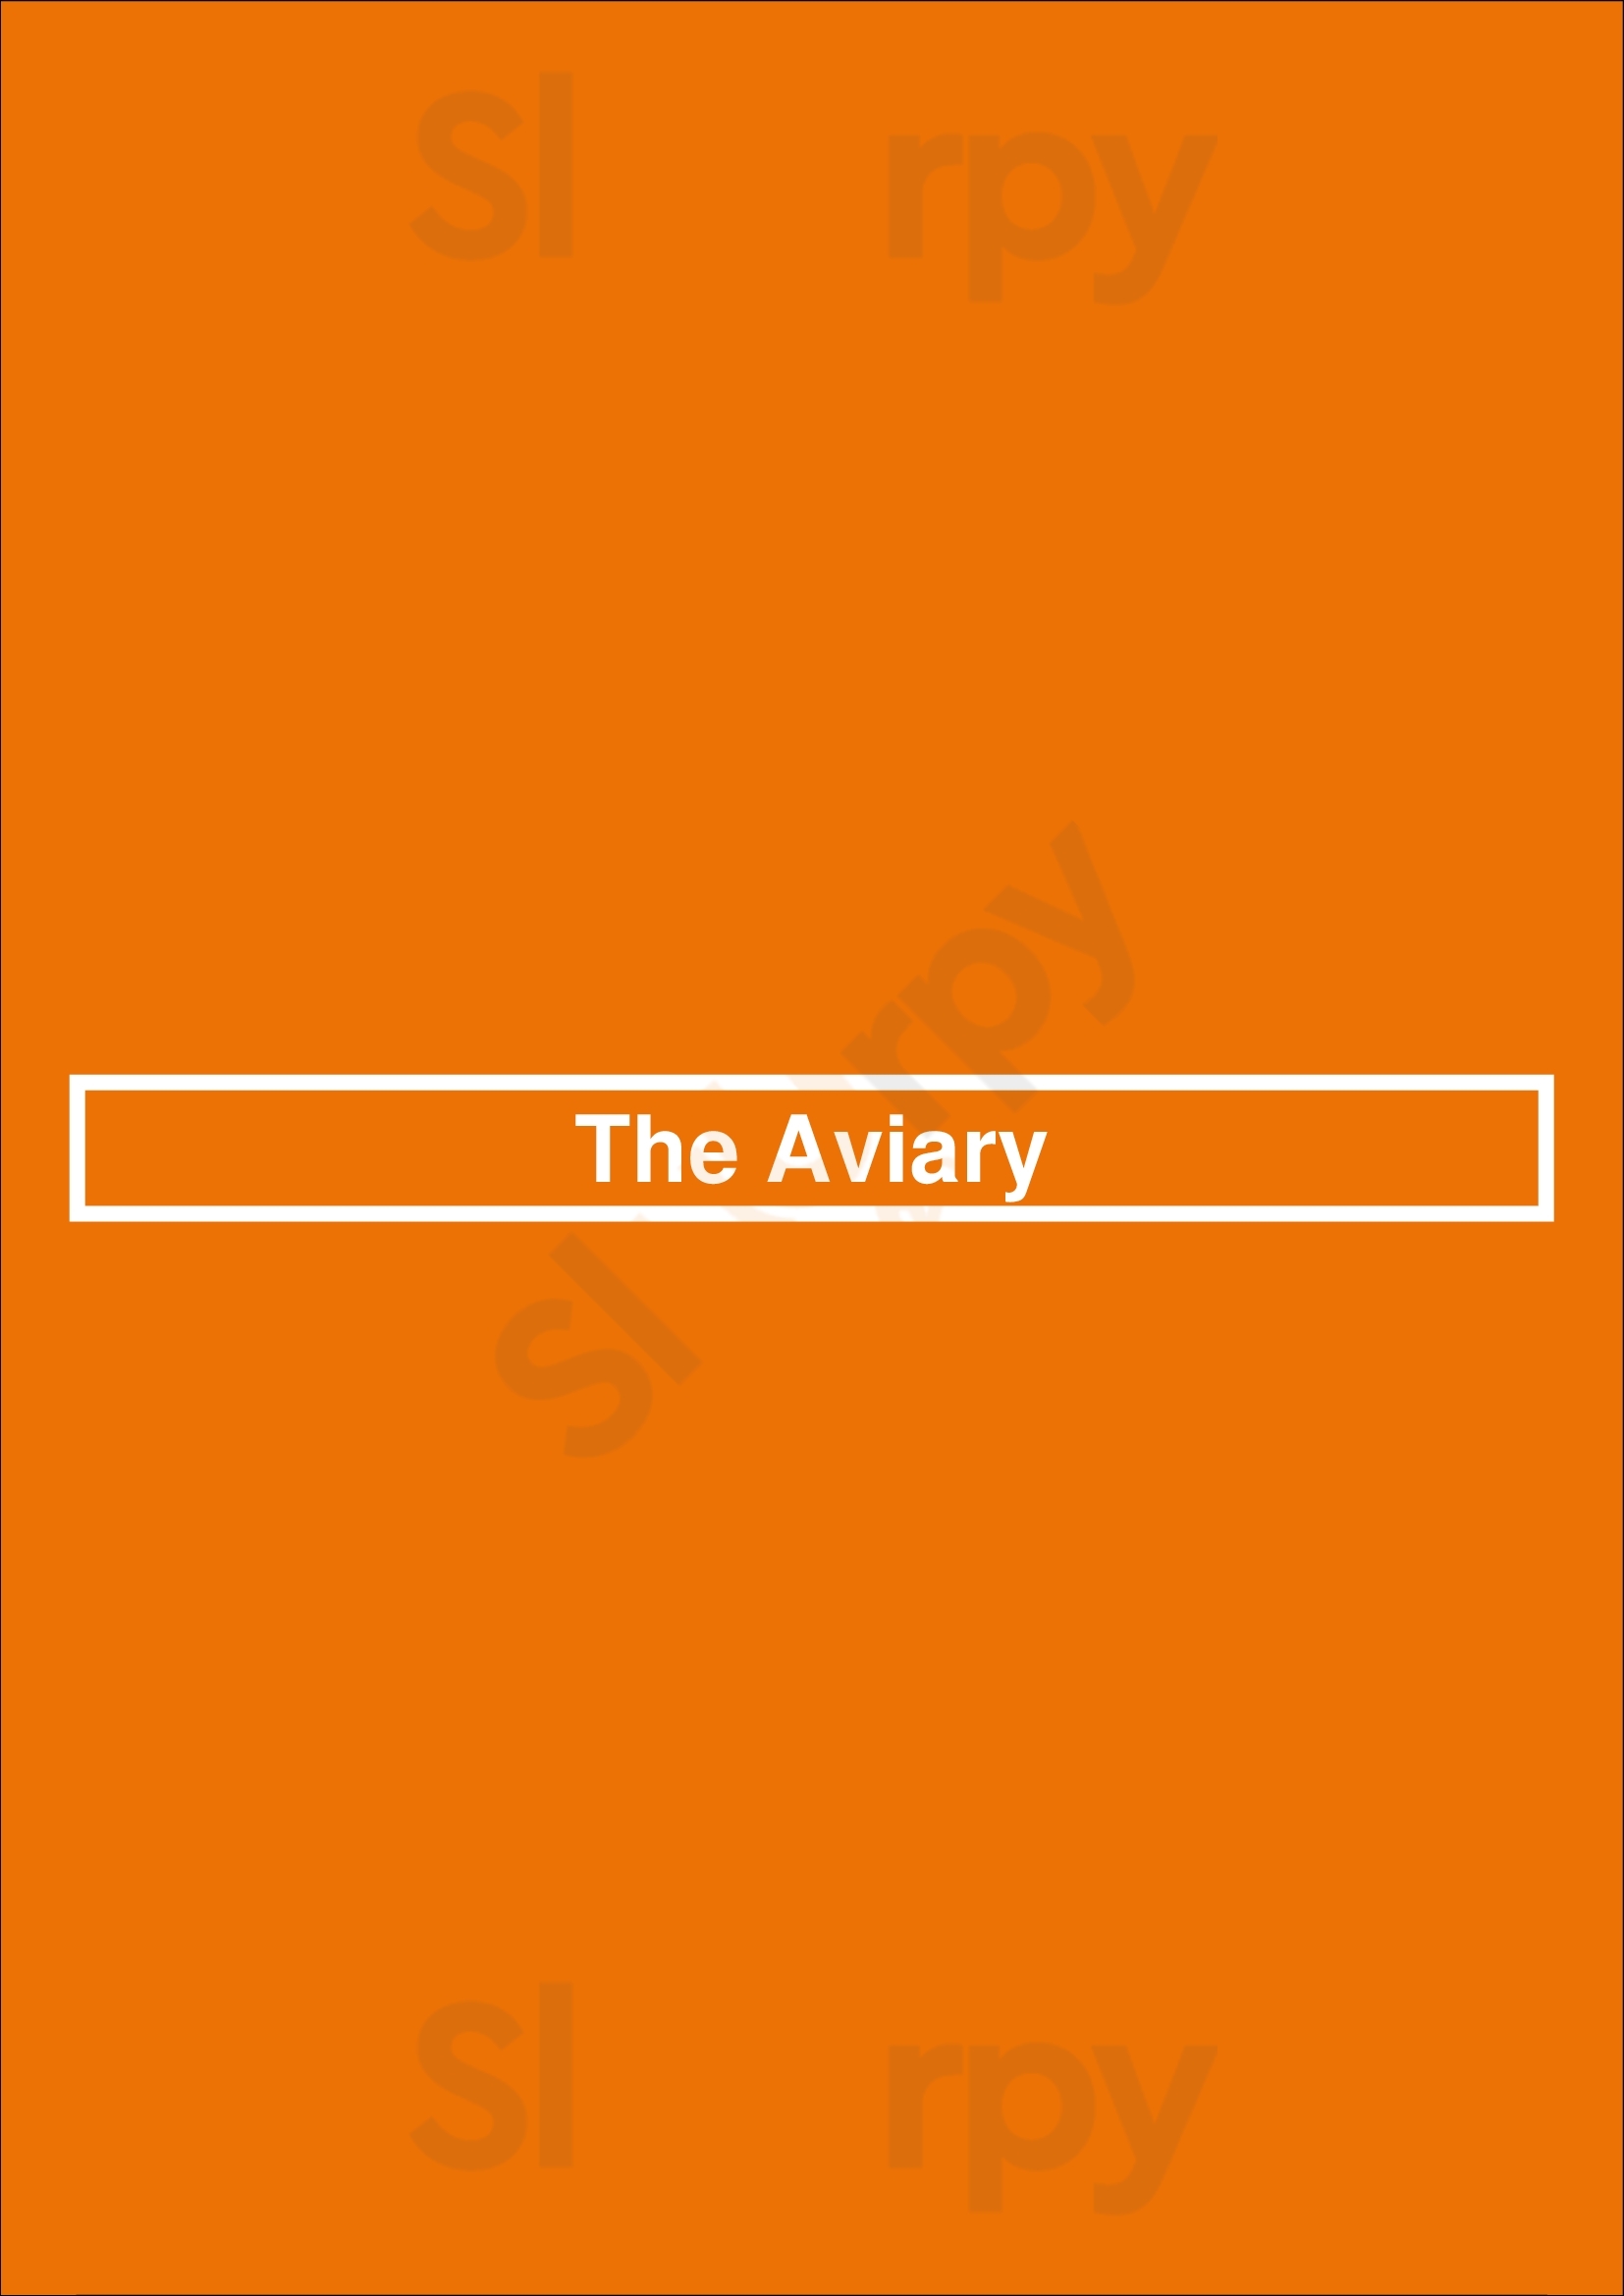 The Aviary Perth Menu - 1